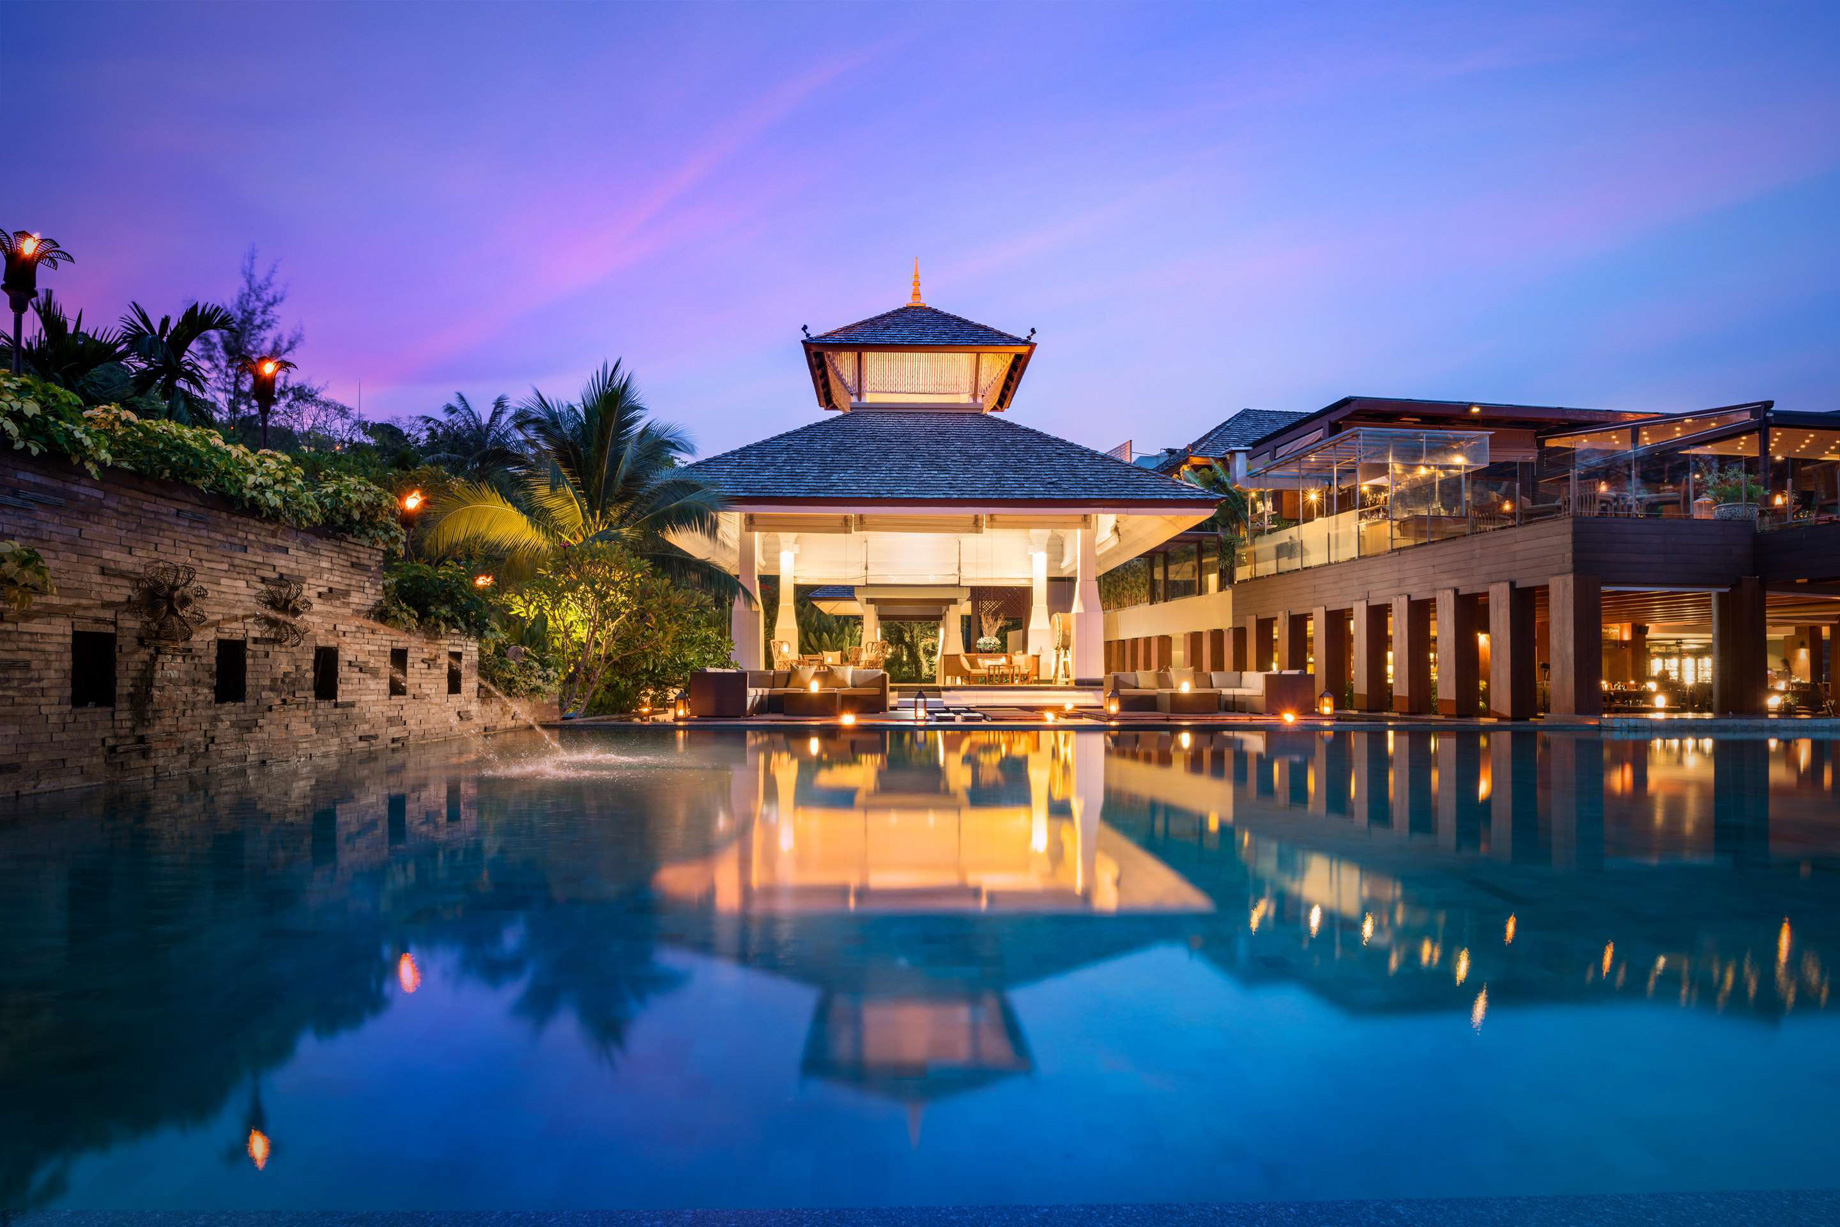 Anantara Layan Phuket Resort & Residences – Thailand – Pool Sunset View